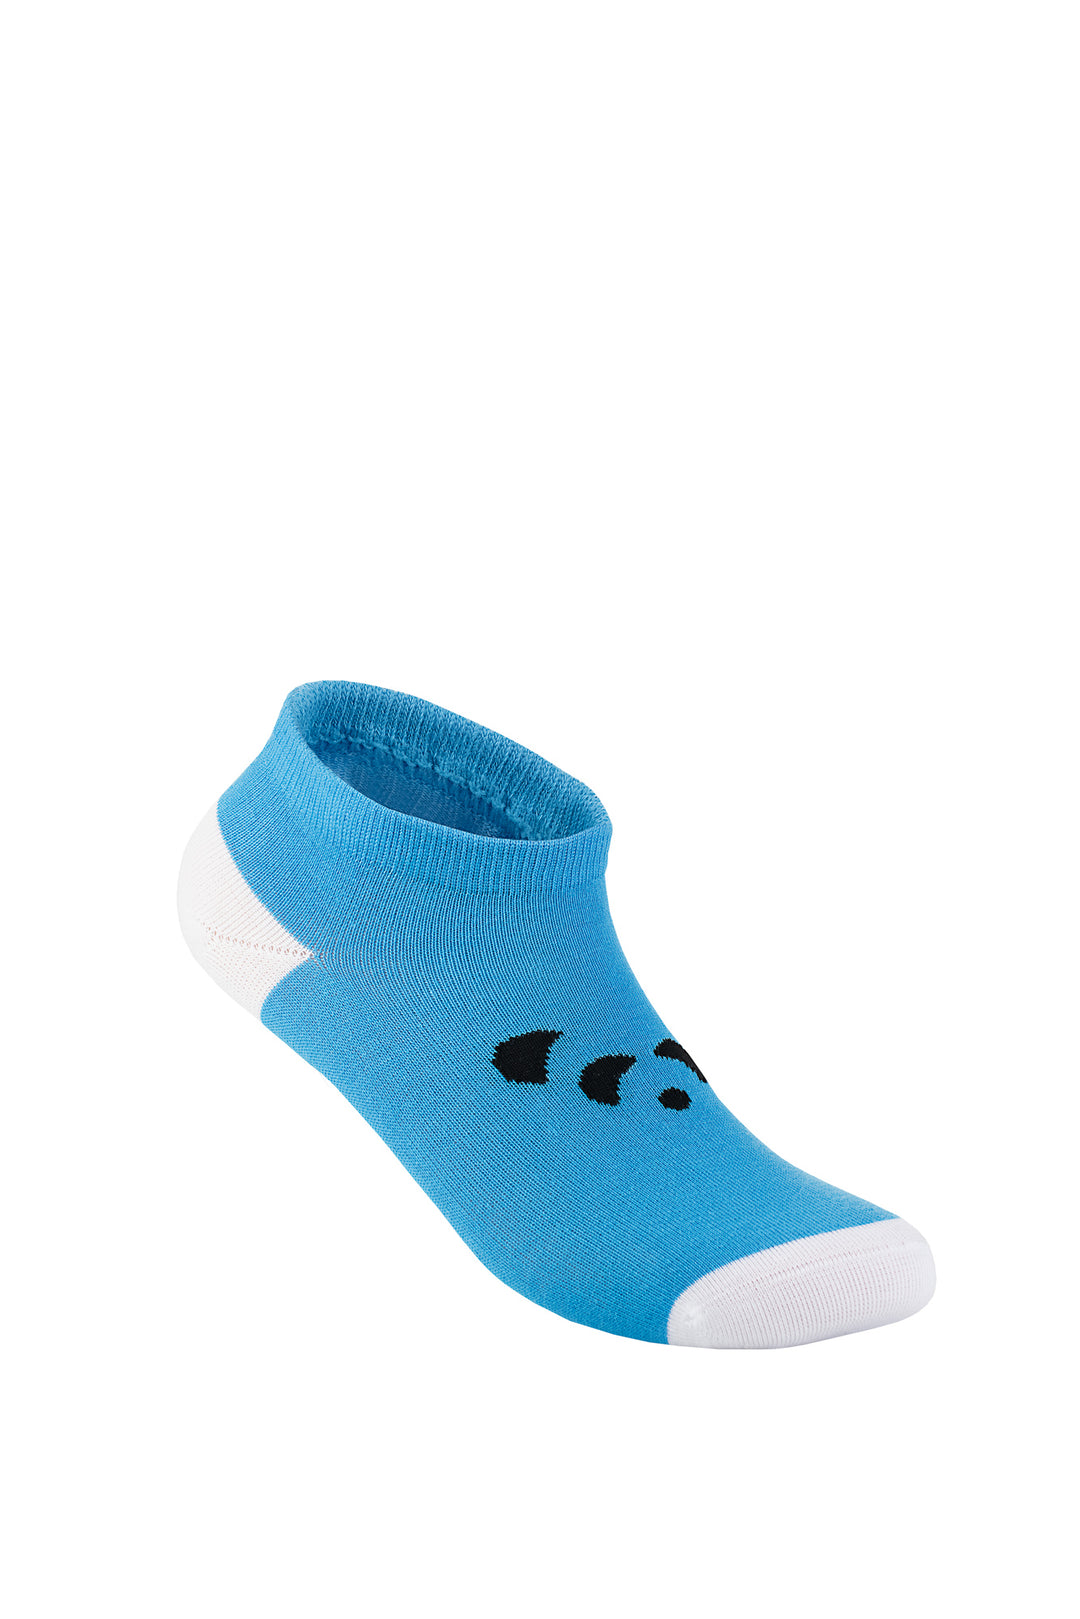 Sprinkle Support Kids Socks - Kind Blue